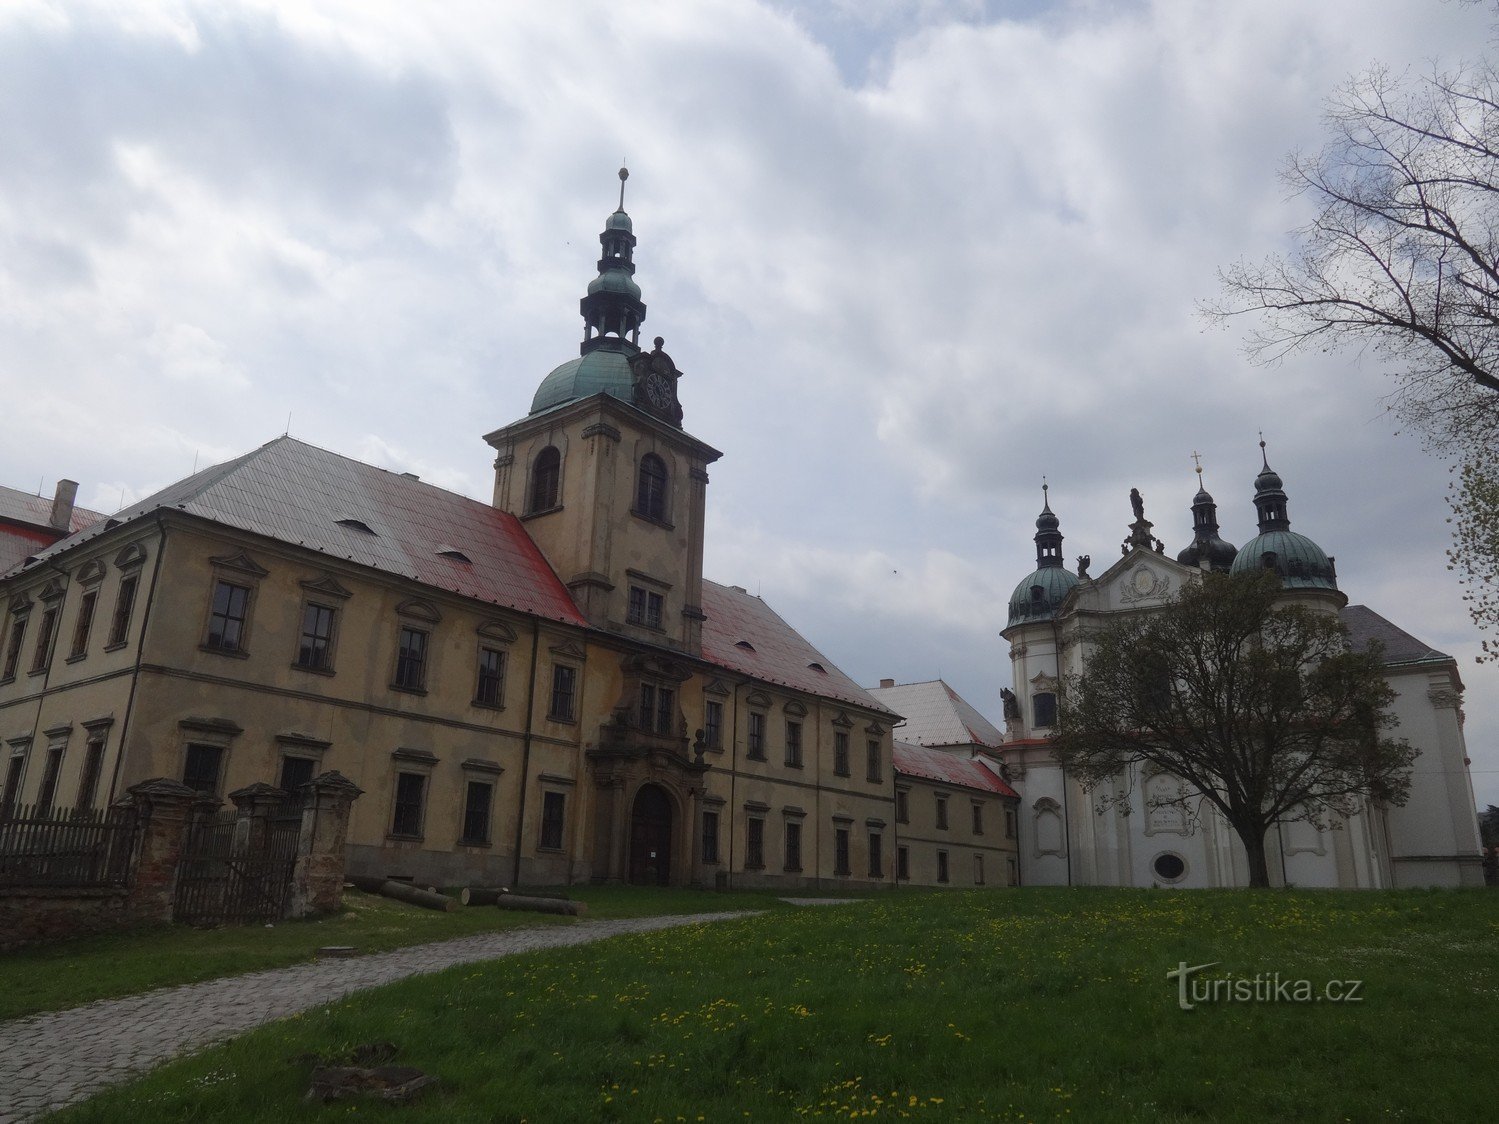 O mosteiro cisterciense em Osek – a pérola das Montanhas Ore